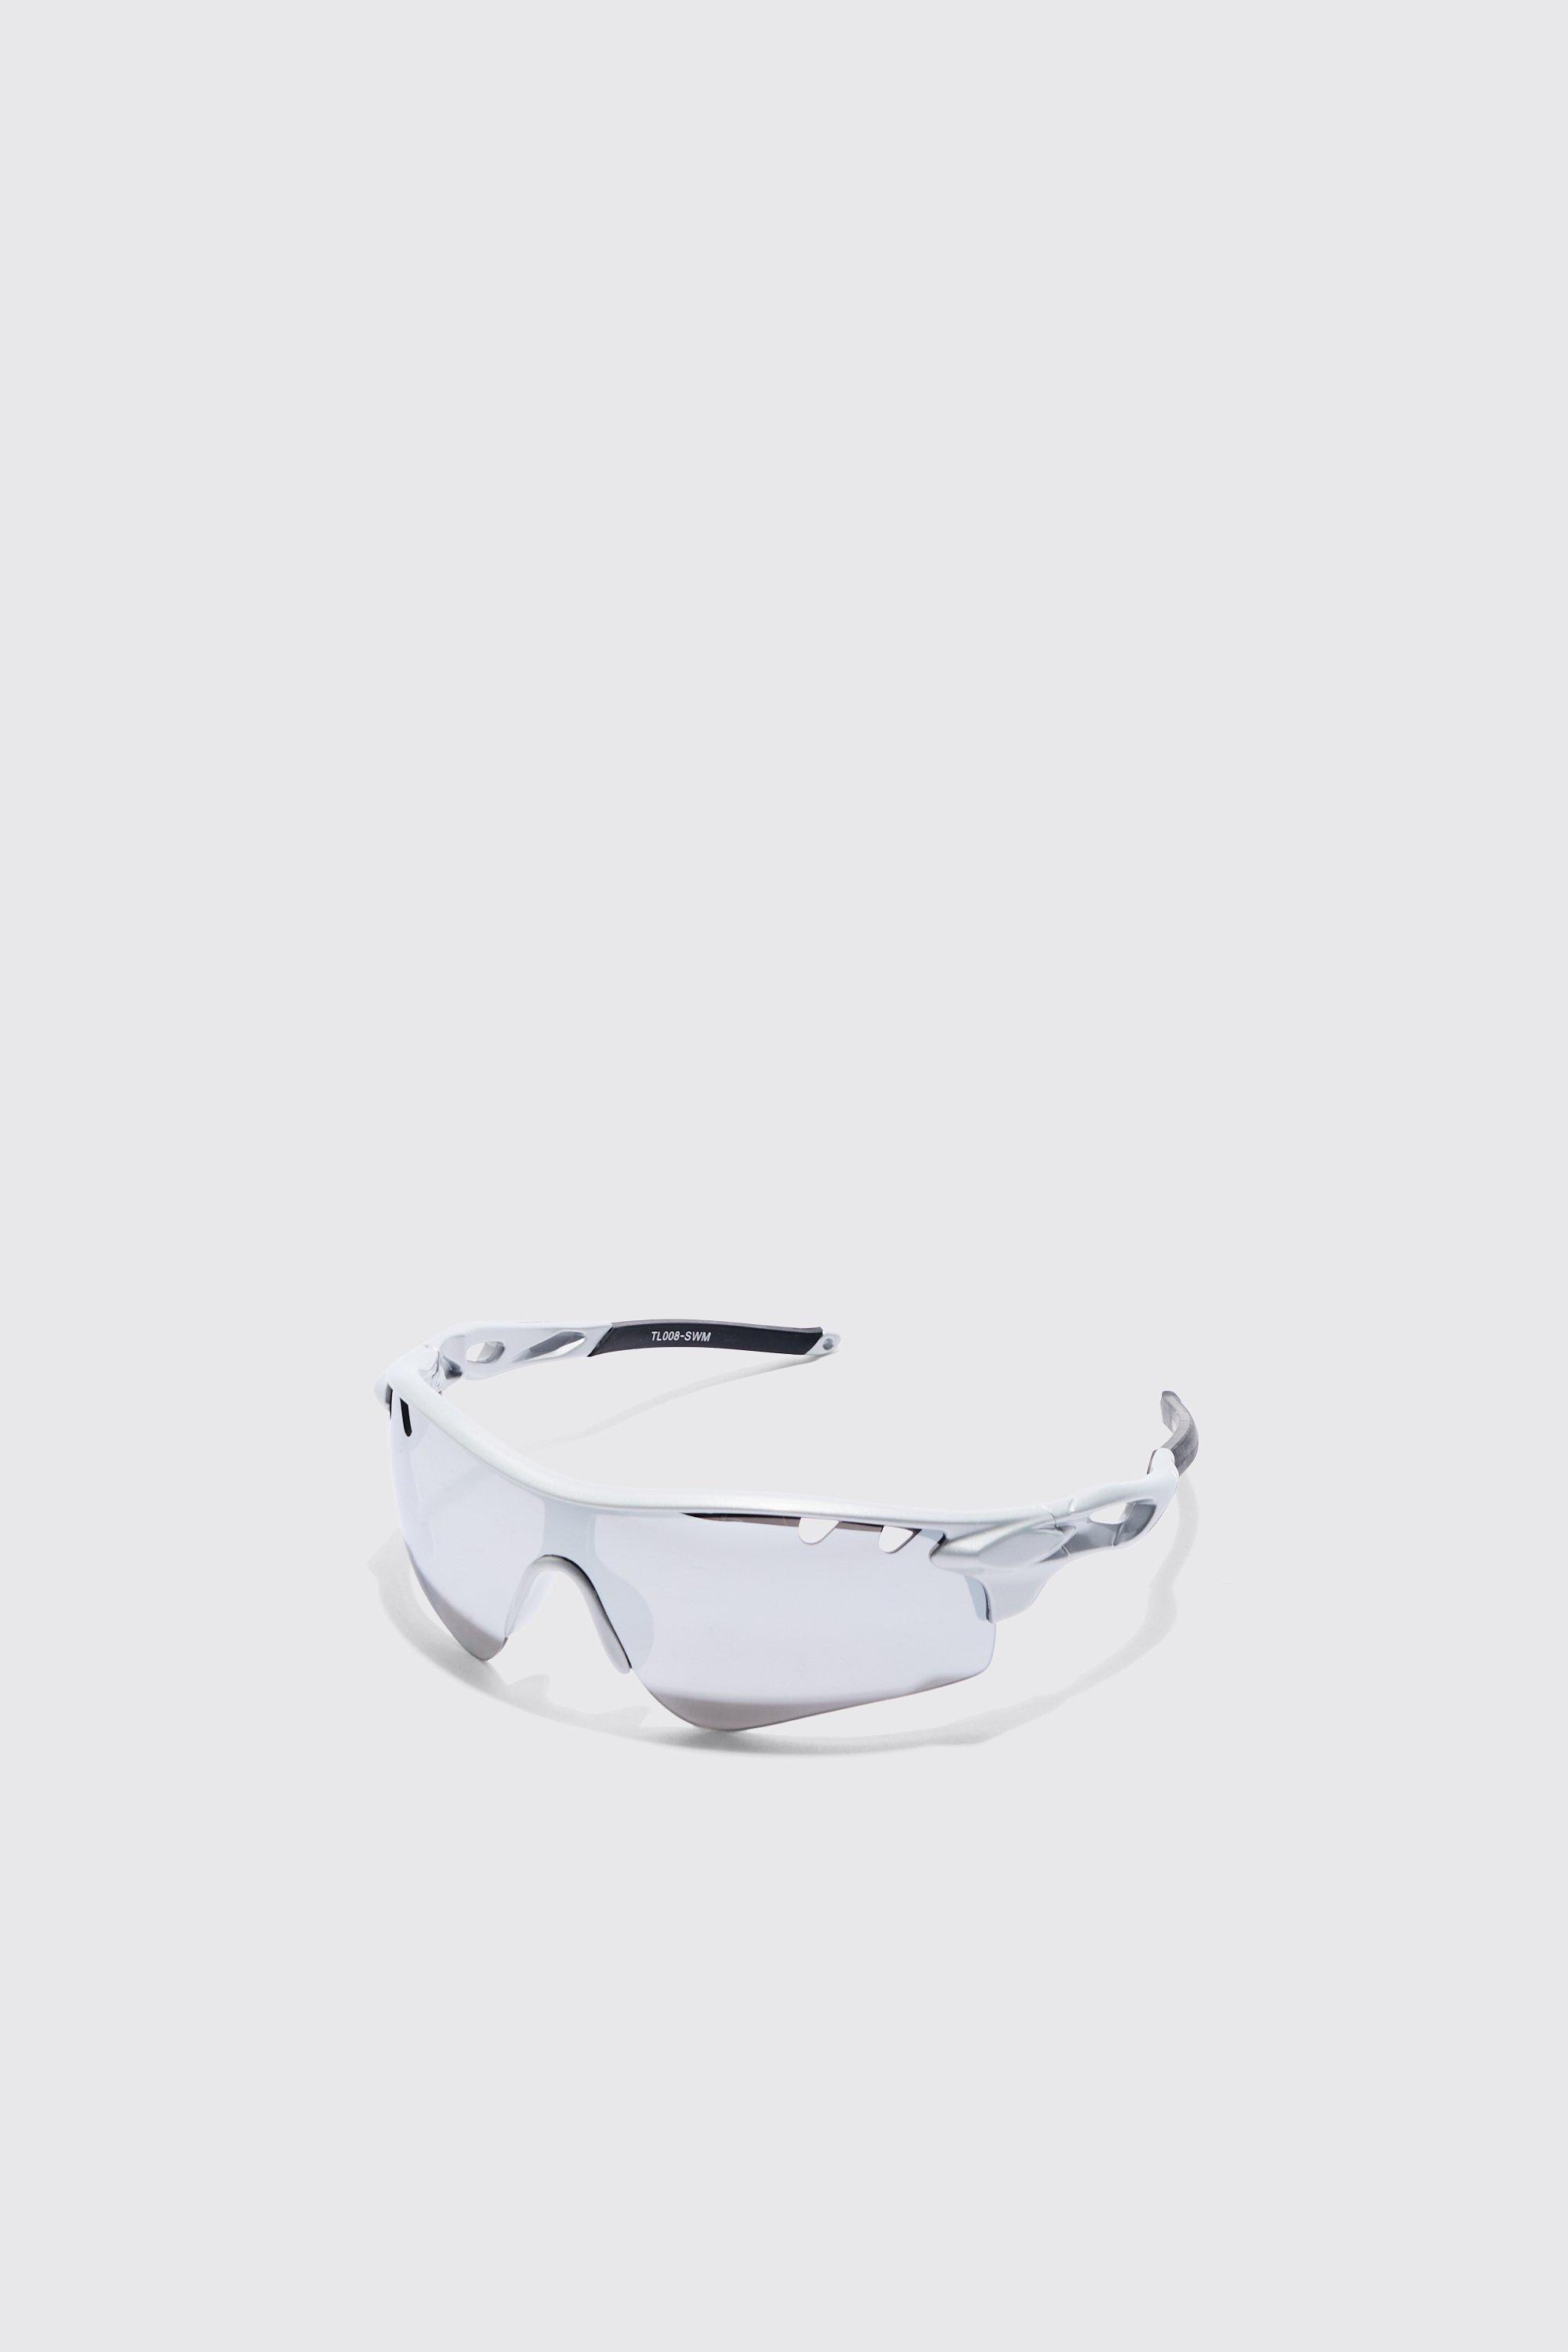 Mens Silver Chrome Lens Angled Sunglasses